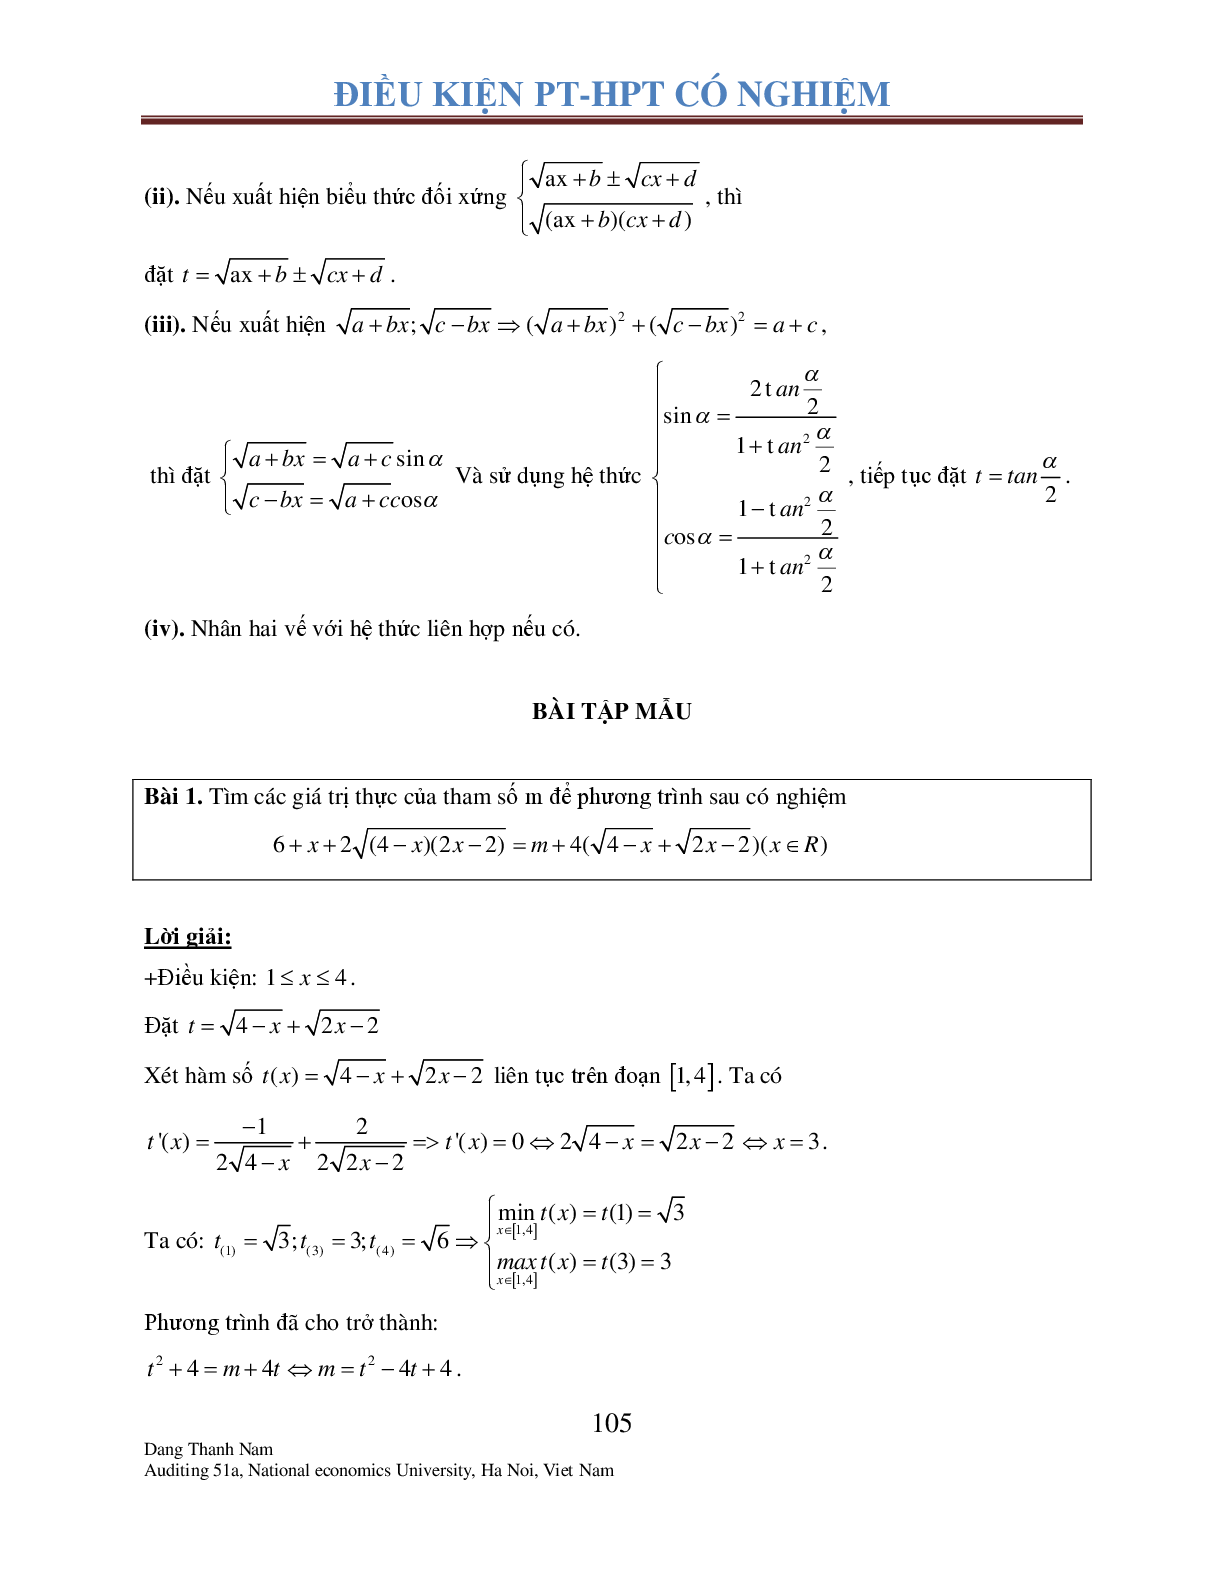 Chuyên đề 2: Tìm điều kiện để Phương trình – Hệ phương trình có nghiệm (trang 4)